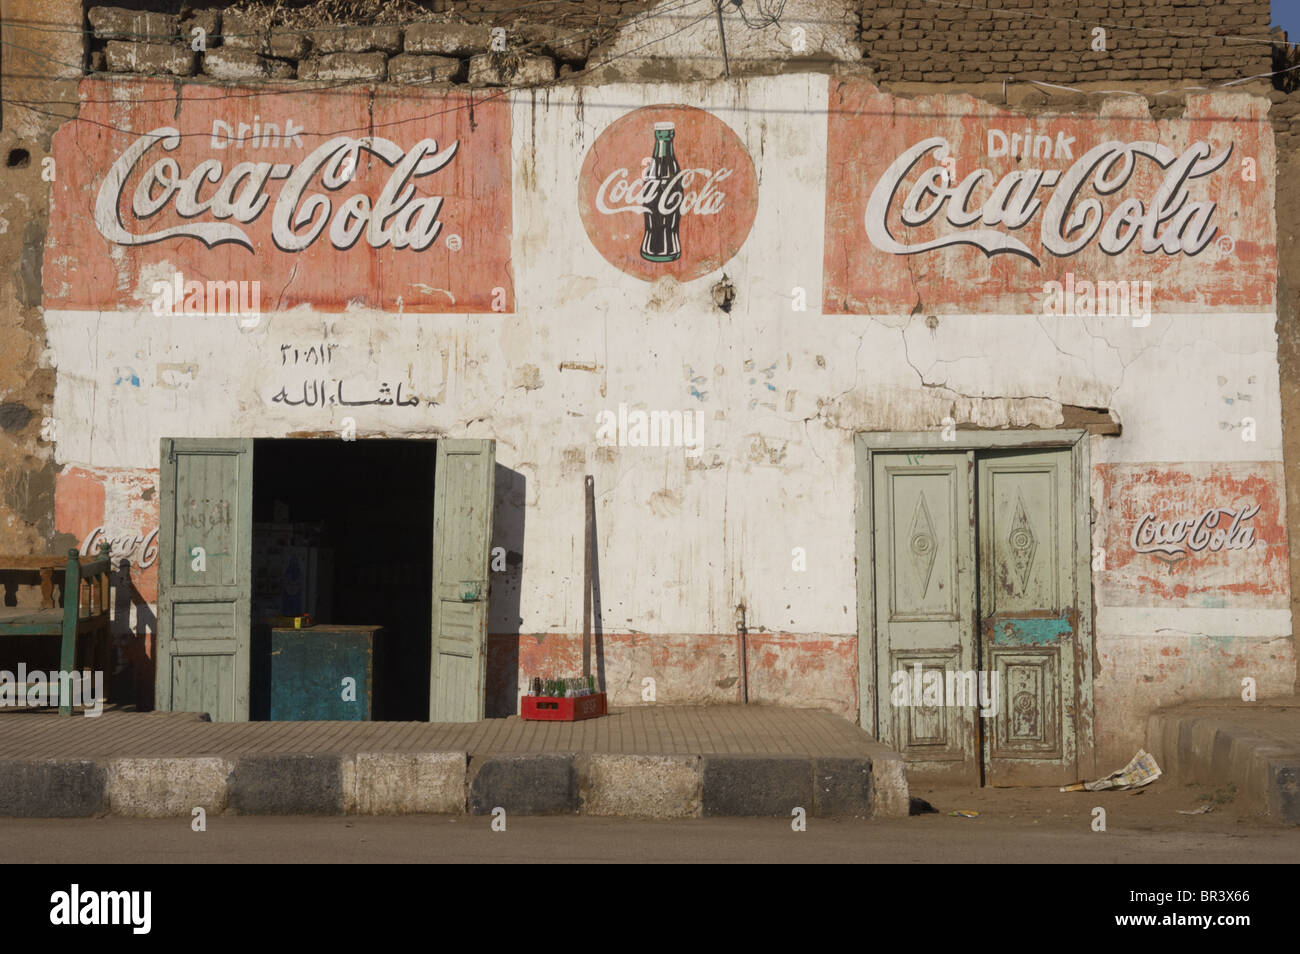 Façade d'un bâtiment avec la publicité de Coca-Cola. Luxor. L'Égypte. Banque D'Images